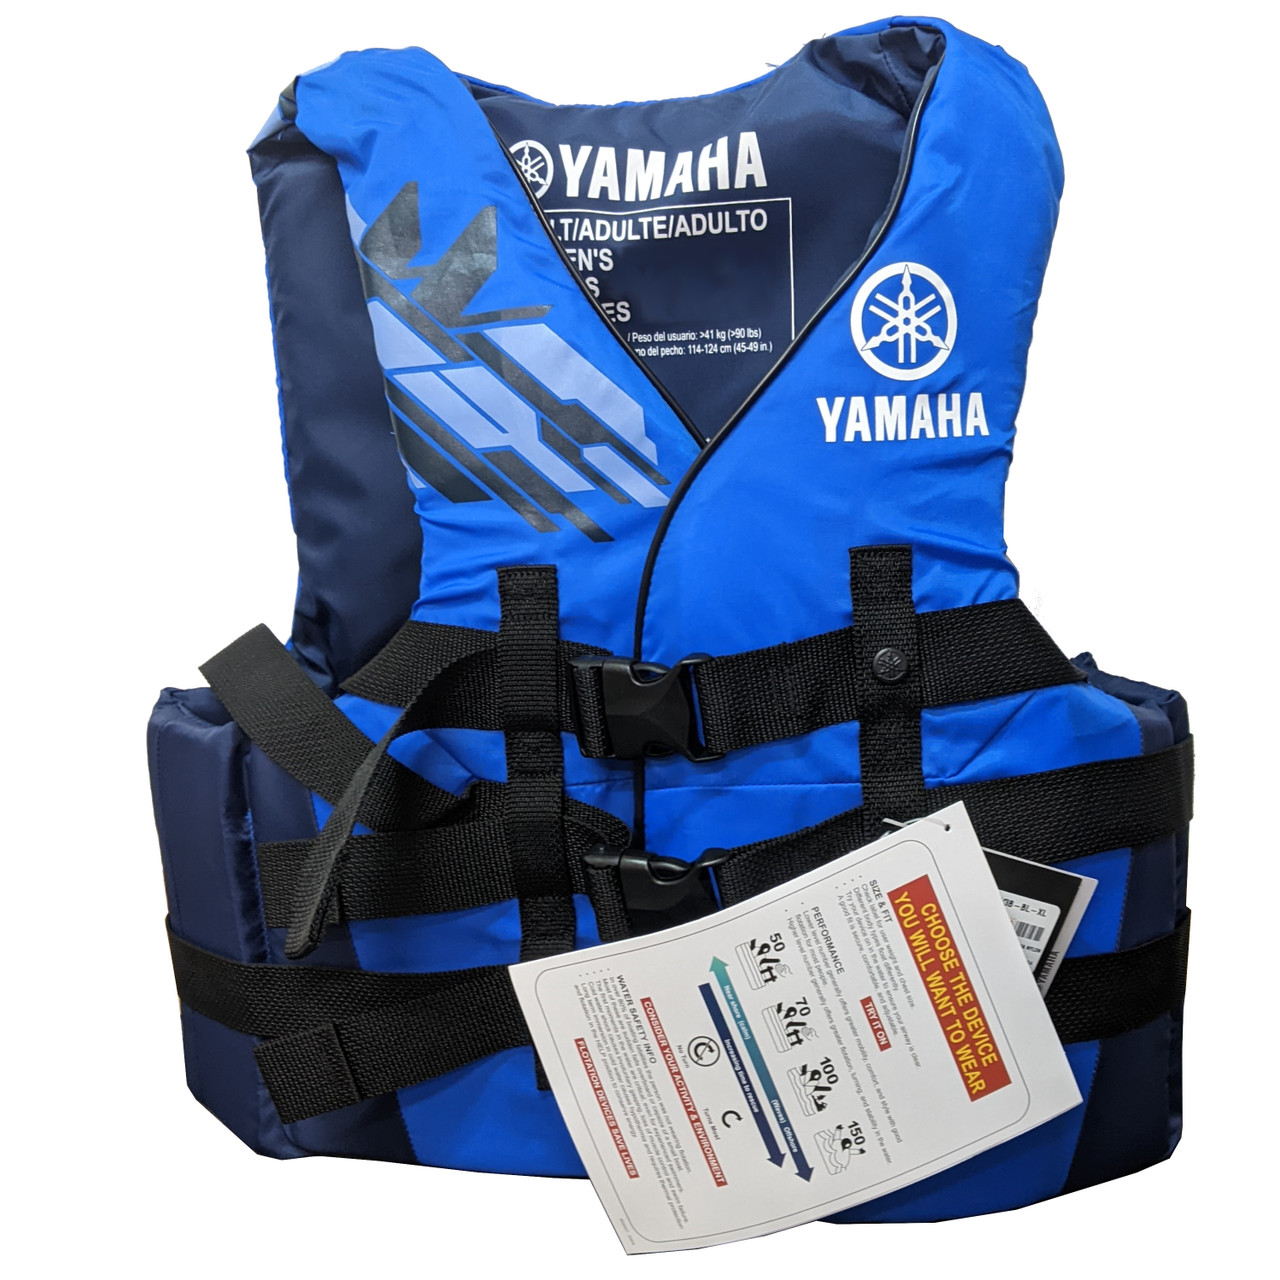 Yamaha New OEM Men's 2X-Large Blue Nylon Value, MAR-23V3B-BL-2X